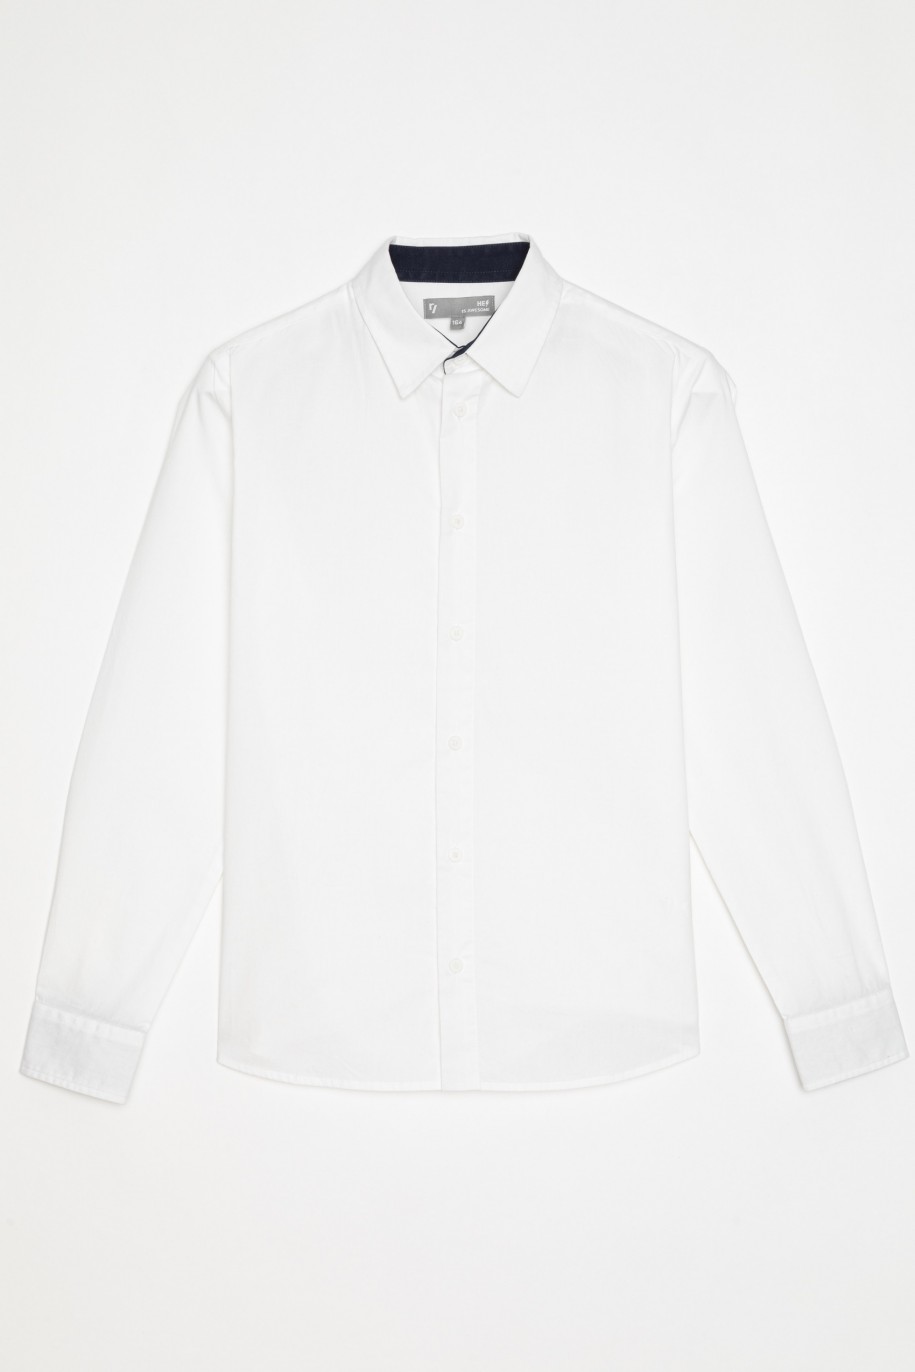 Elegancka biała koszula dla chłopaka - 22615